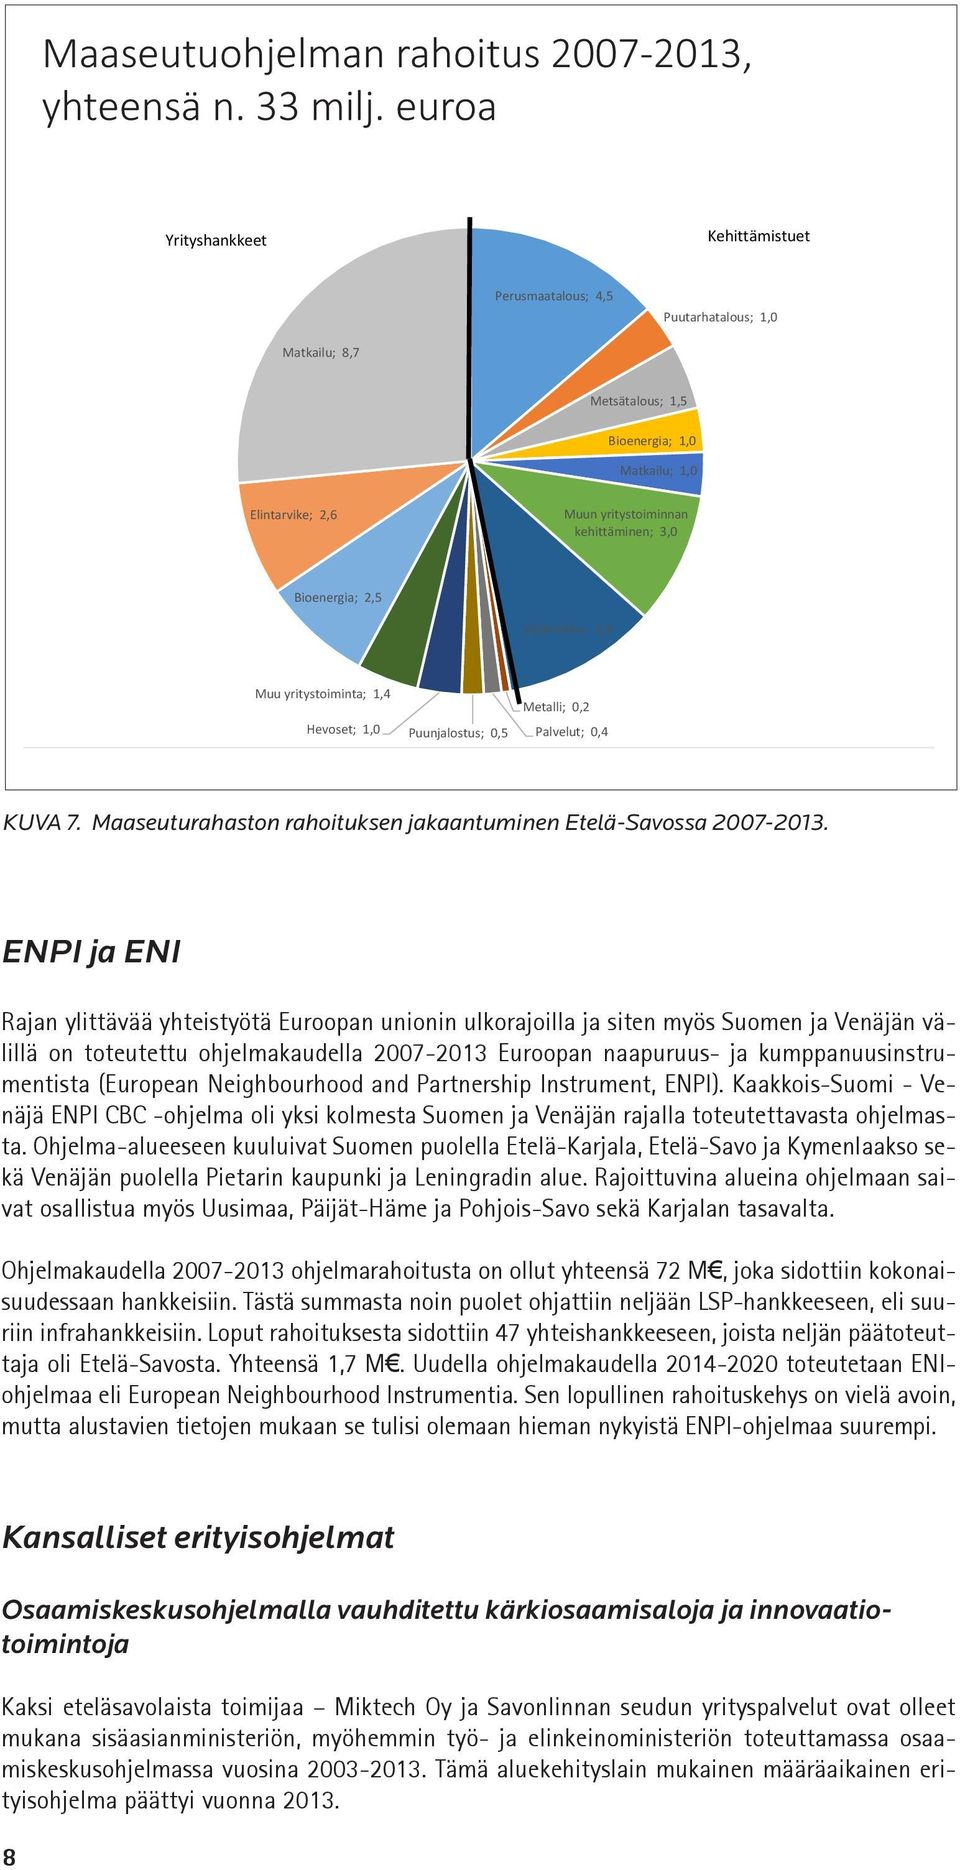 Bioenergia; 2,5 Kylät+infra; 3,5 Muu yritystoiminta; 1,4 Hevoset; 1,0 Puunjalostus; 0,5 Metalli; 0,2 Palvelut; 0,4 KUVA 7. Maaseuturahaston rahoituksen jakaantuminen Etelä-Savossa 2007-2013.